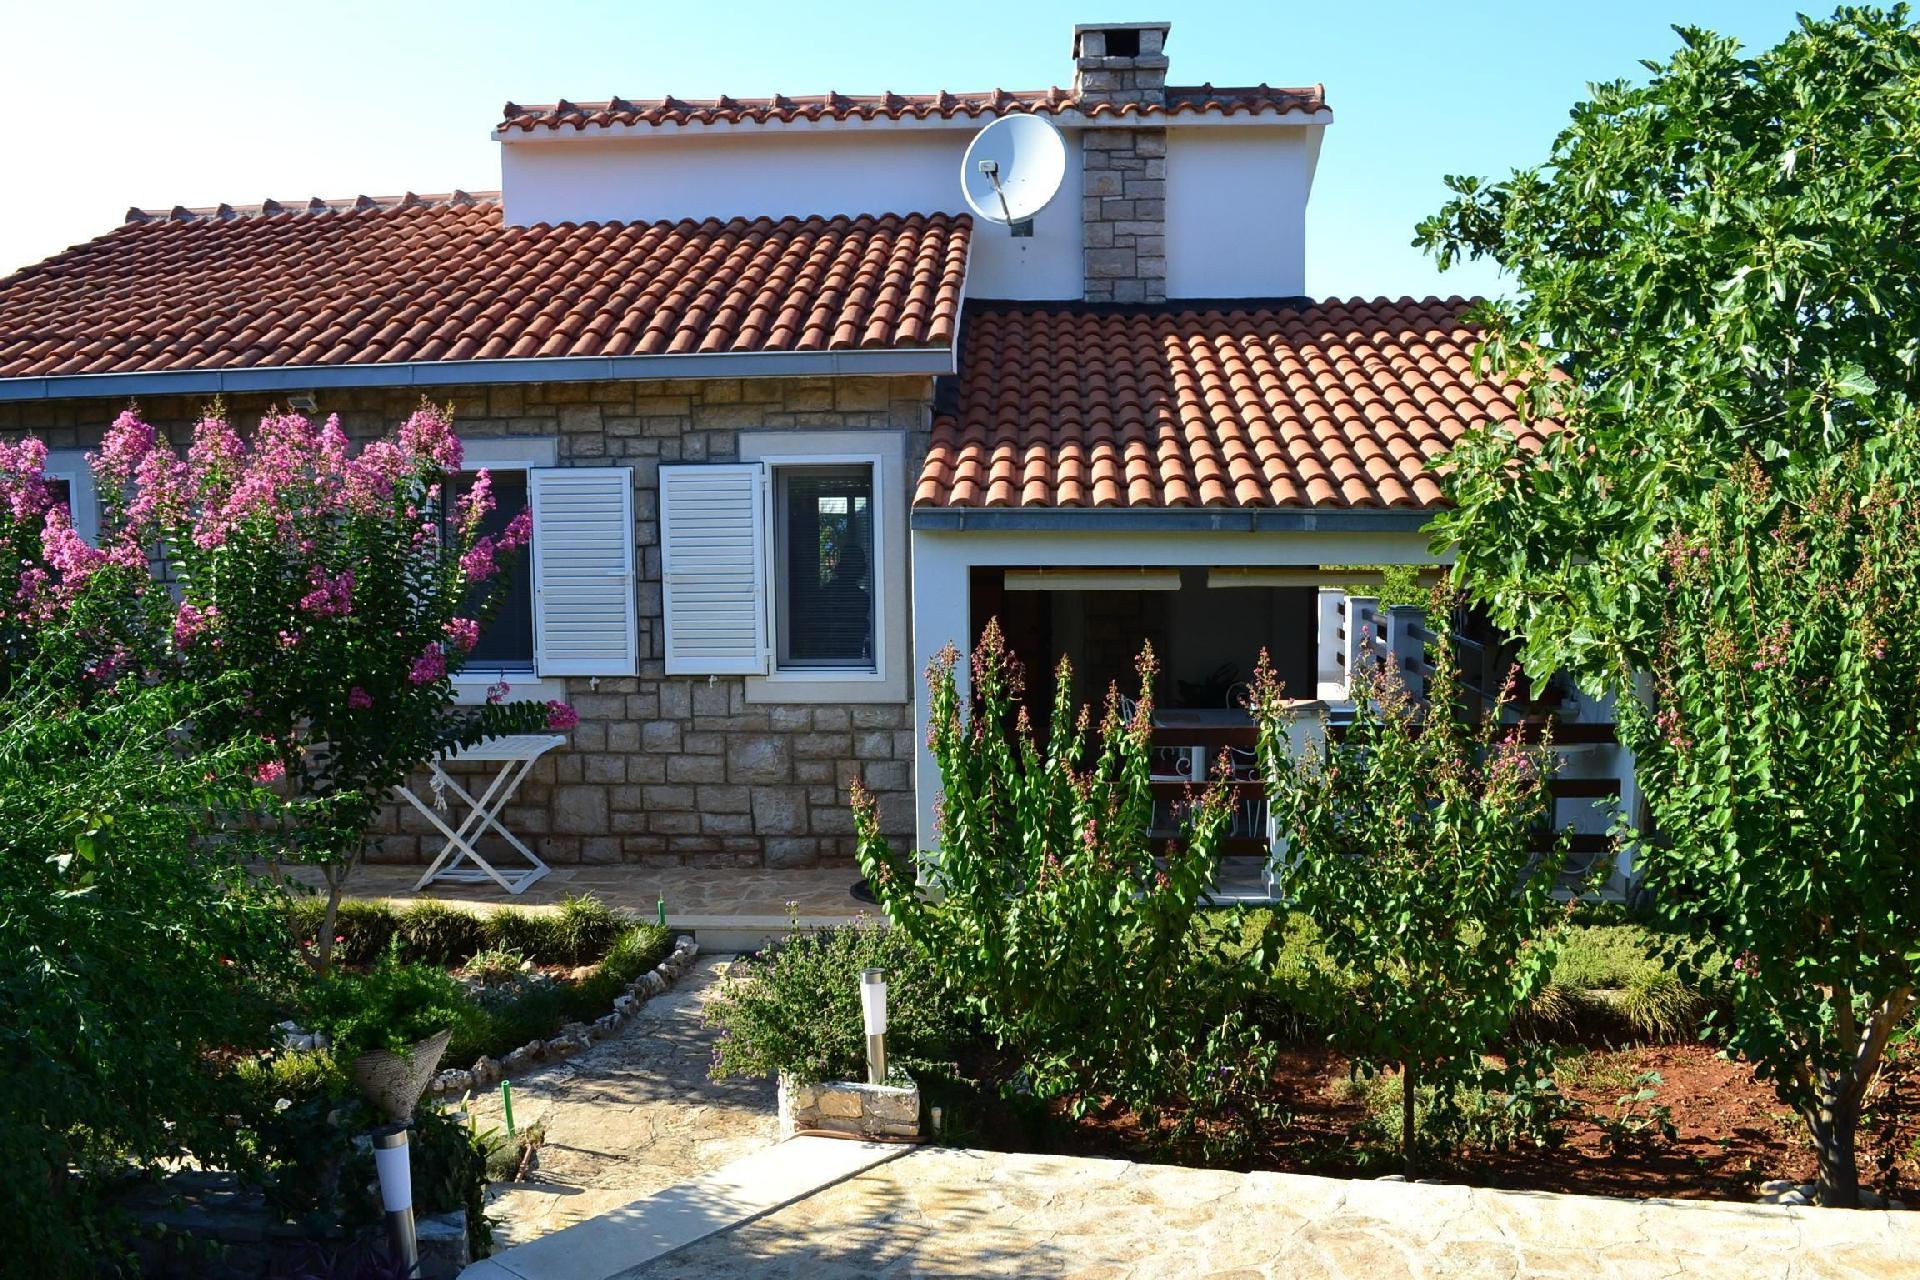 Barrierefreie Ferienwohnung mit zwei Terrassen, in Ferienhaus in Dalmatien